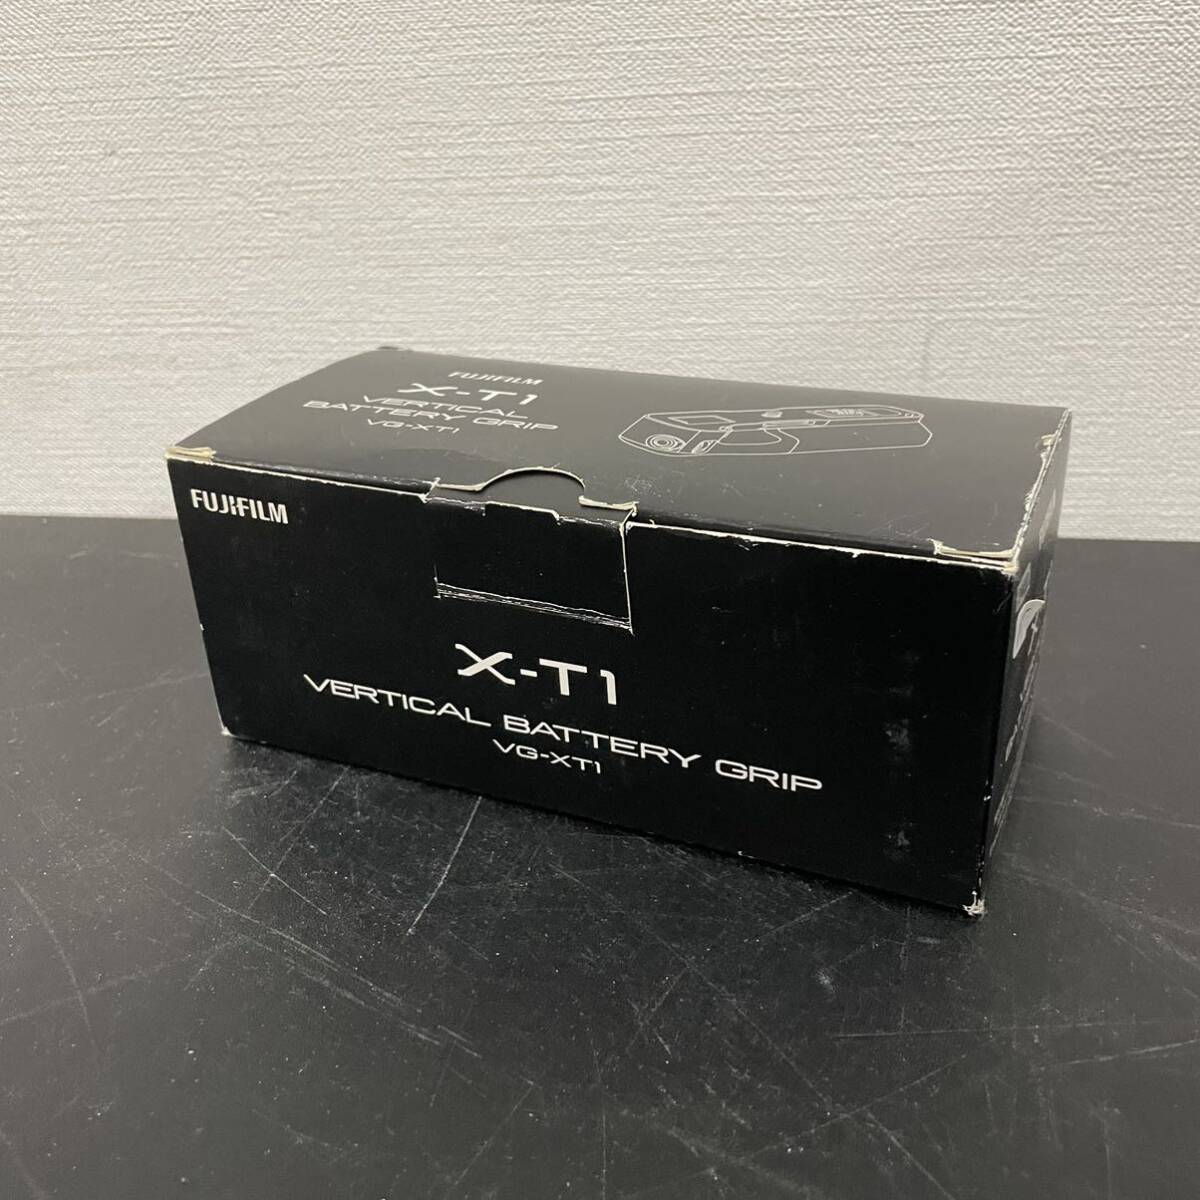 1円〜 家電屋引き上げ品 富士フィルム バッテリーグリップ VG-XT1の画像1